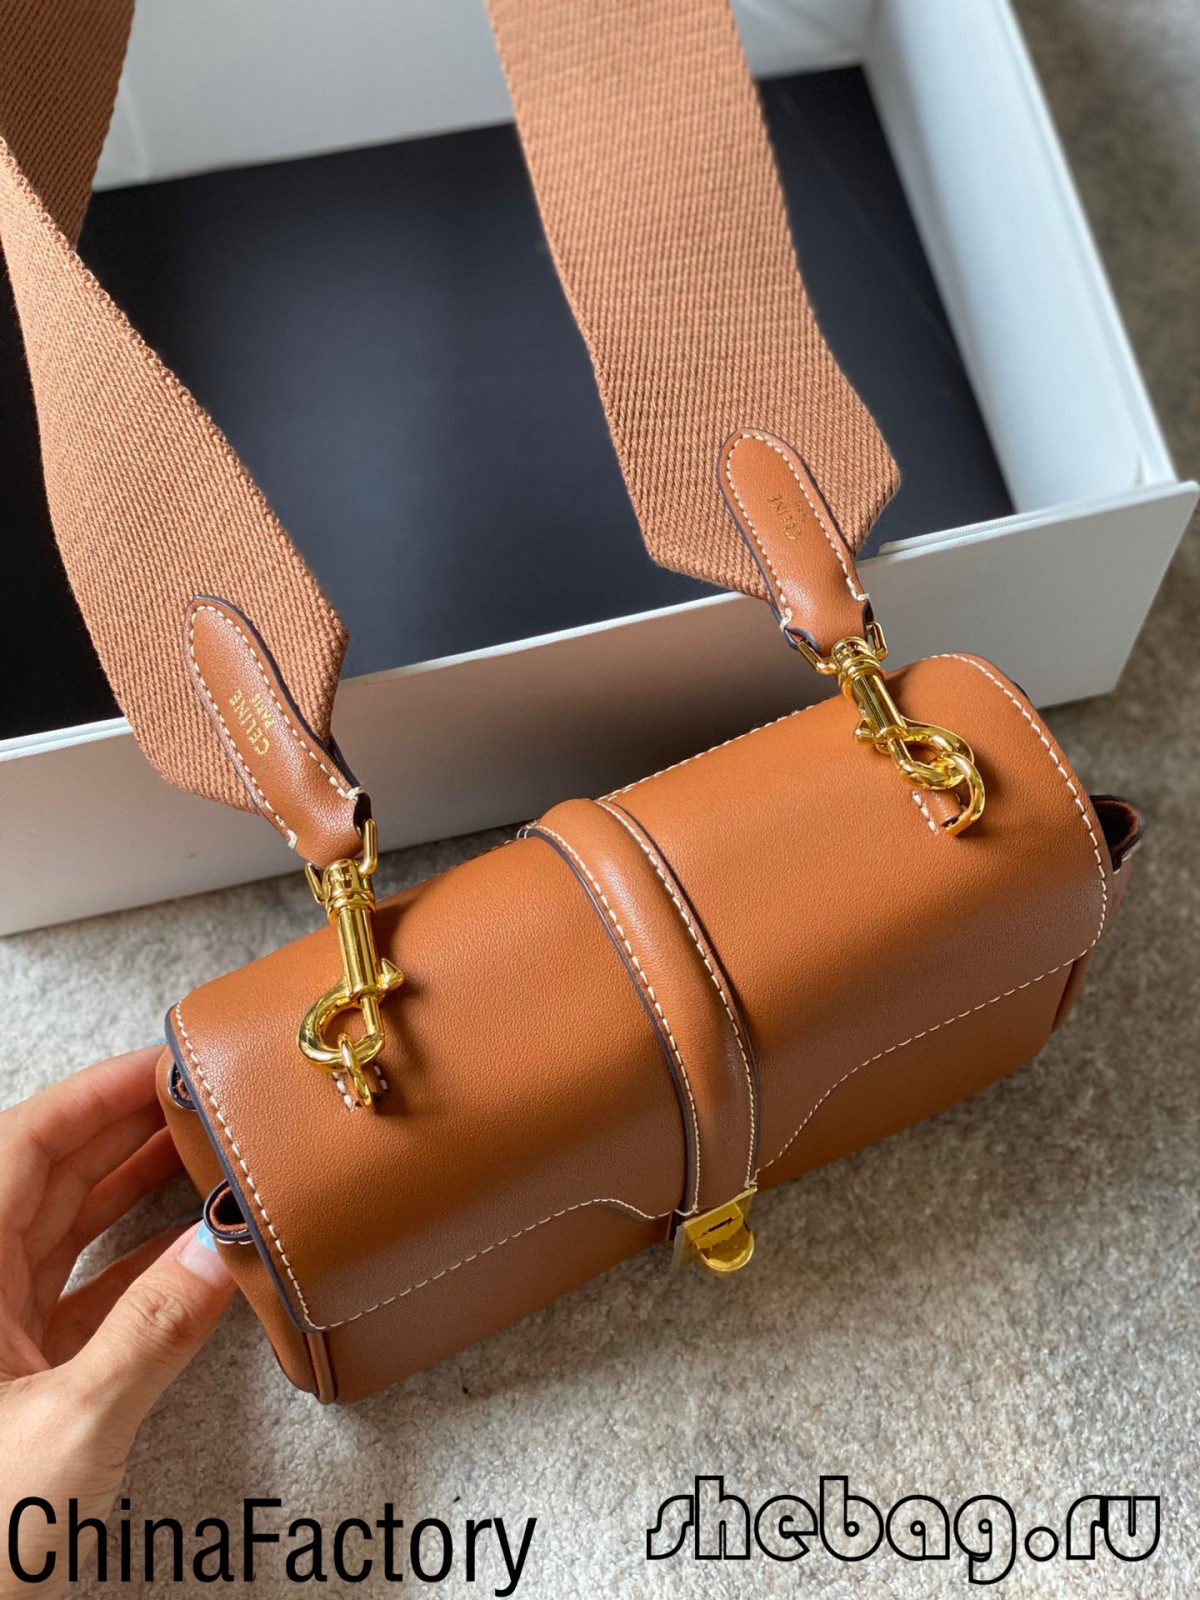 Ubi invenio optimam figuram in saccis Celine: Celine Tabou (2022 latest) -Best Quality Fake Louis Vuitton Bag Online Store, Replica designer bag ru